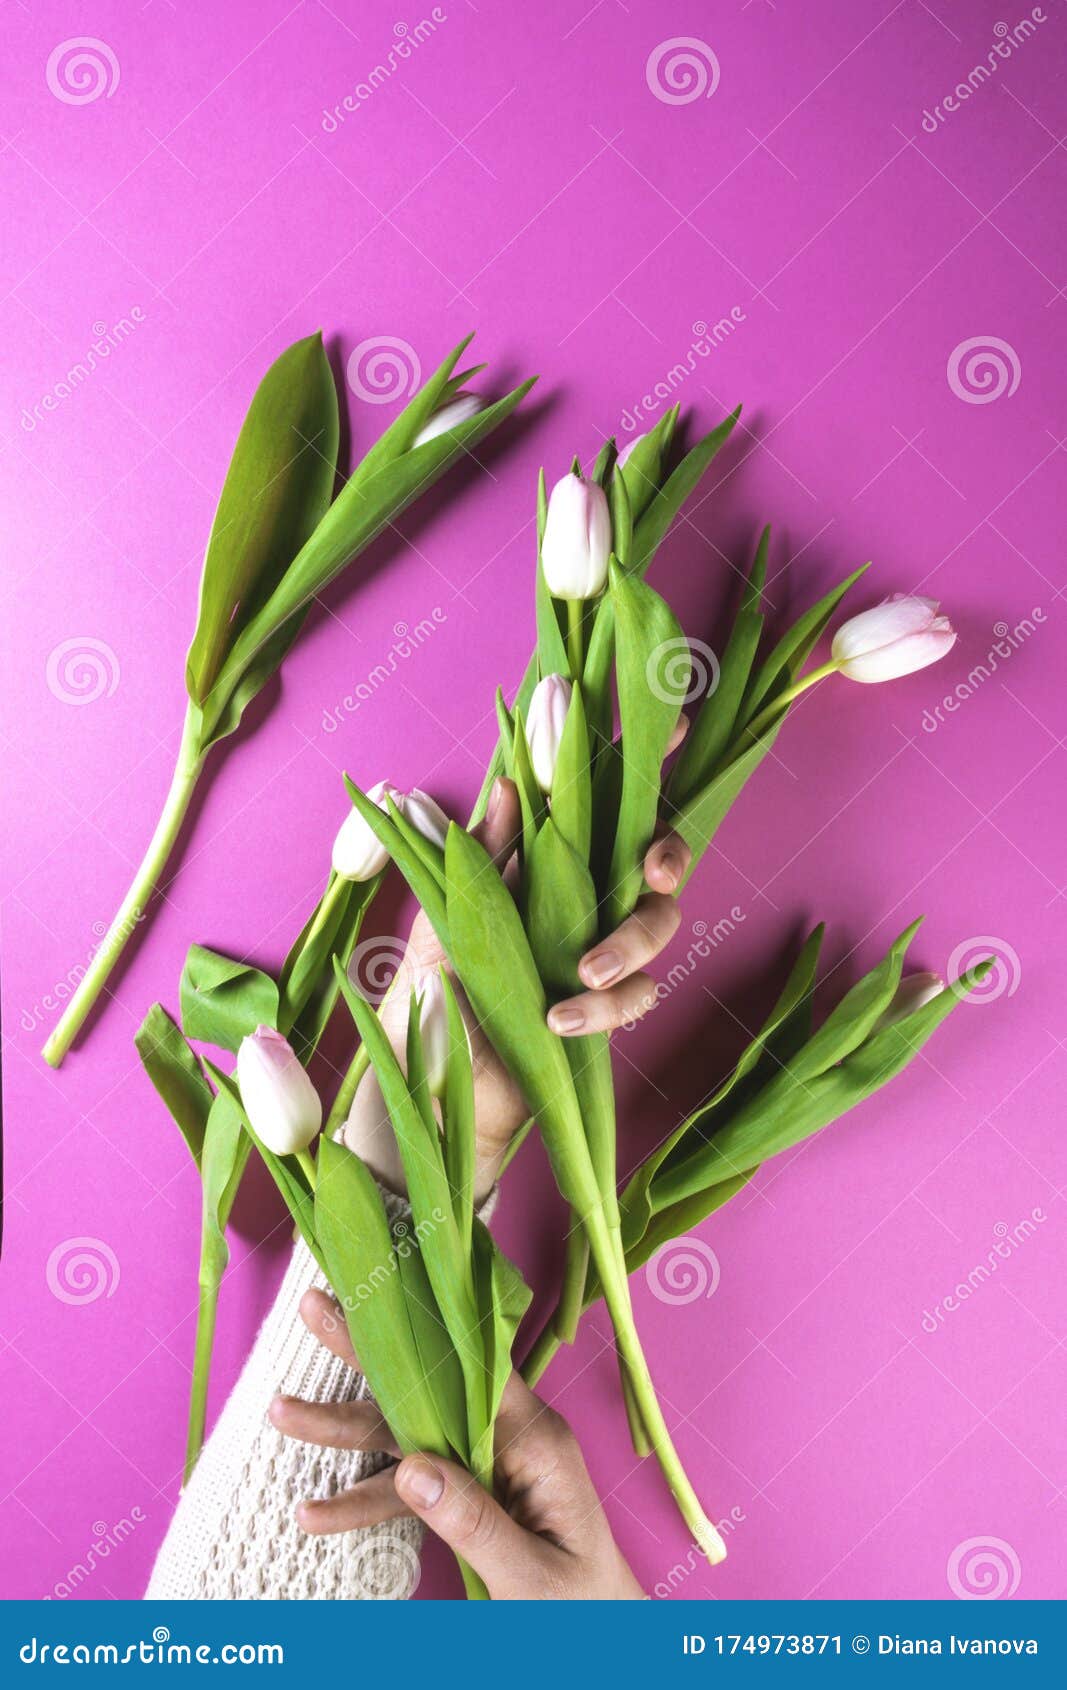 女性手捧三叶草花束与粉红色的花朵在金属藤图片下载 - 觅知网